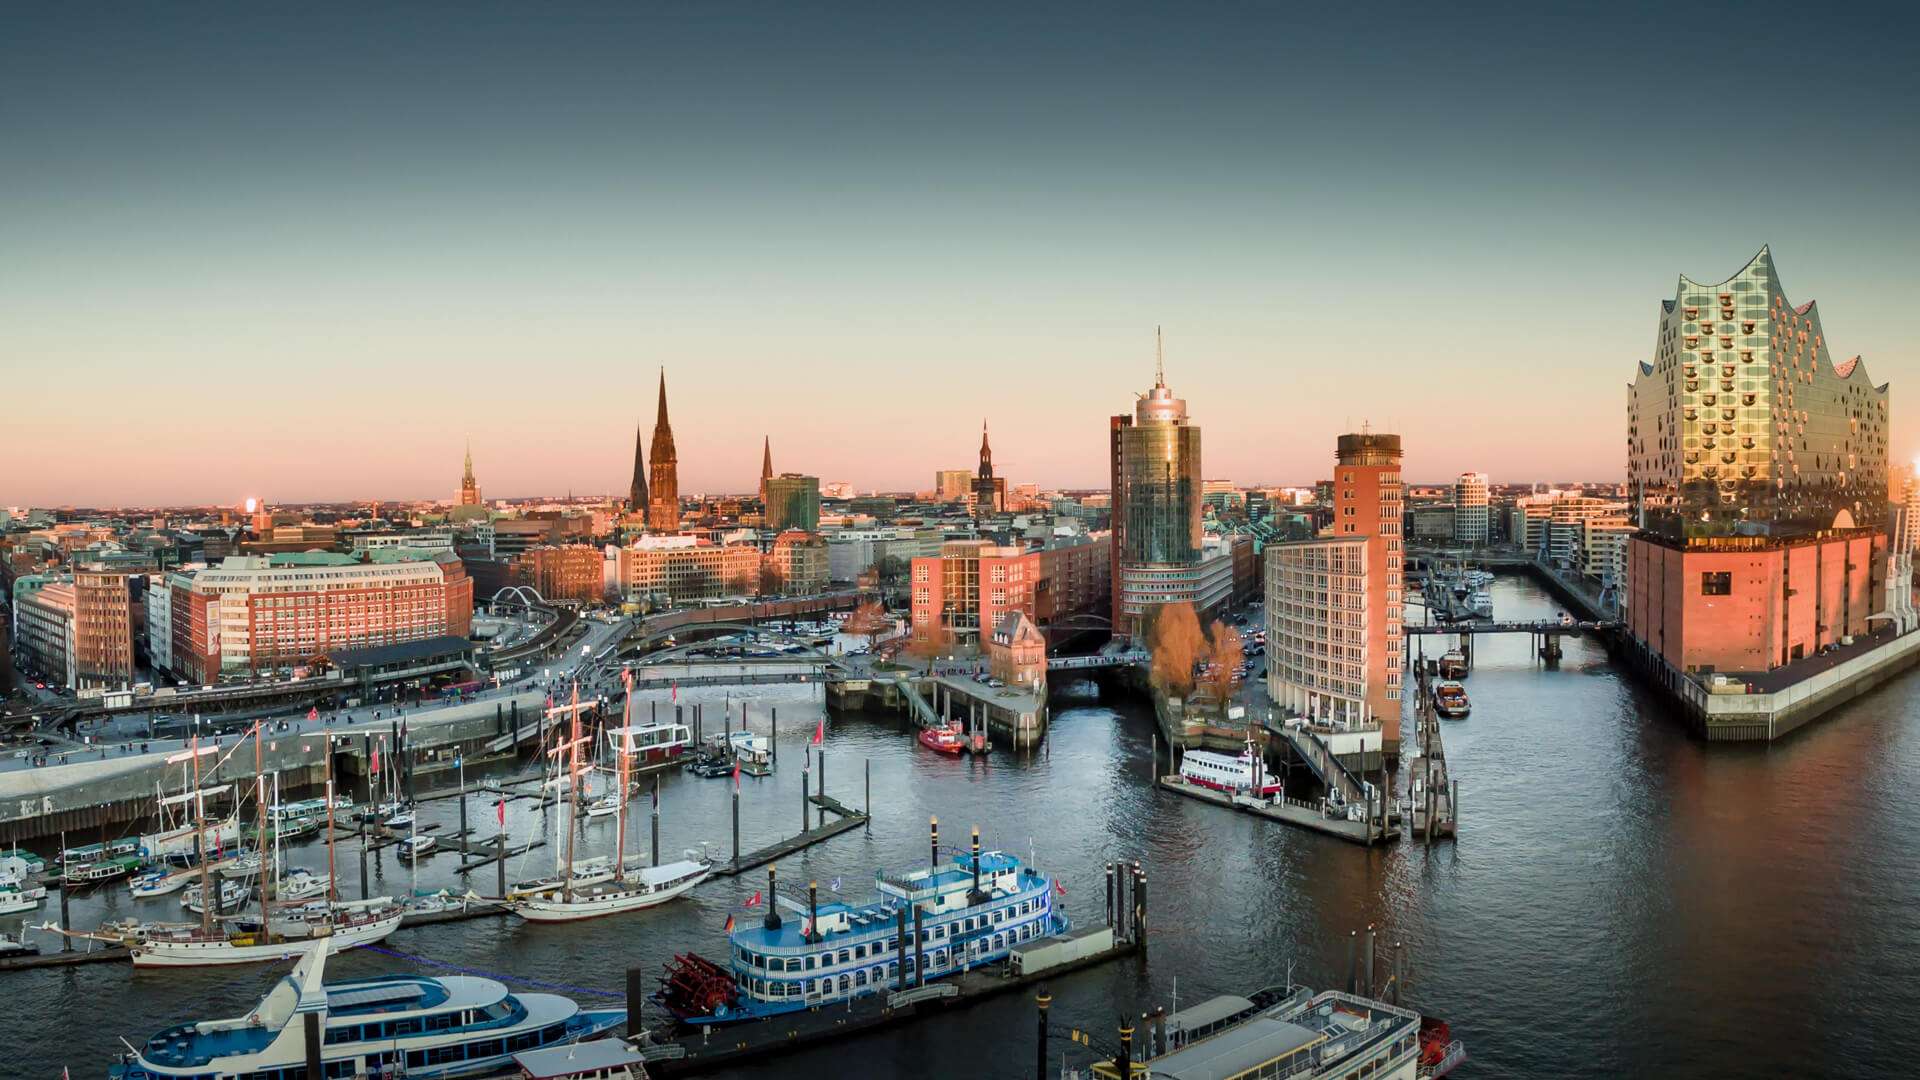 Hamburg: Elbphilharmonie and Hafencity at sunset